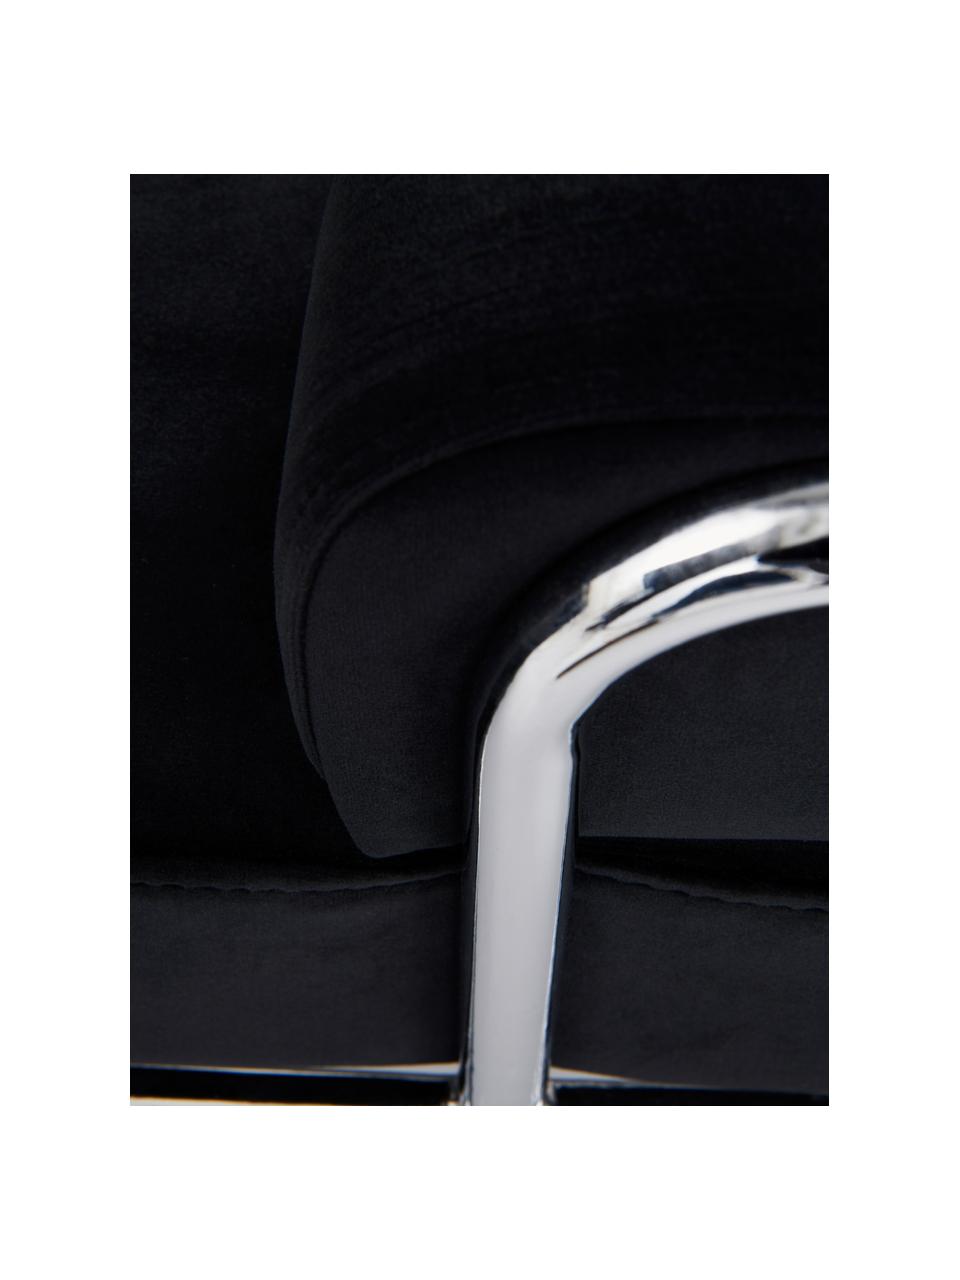 Samt-Haustierbett Fldo, Bezug: Samt (100 % Polyester), Gestell: Metall, verchromt, Schwarz, Silberfarben, B 83 x T 52 cm